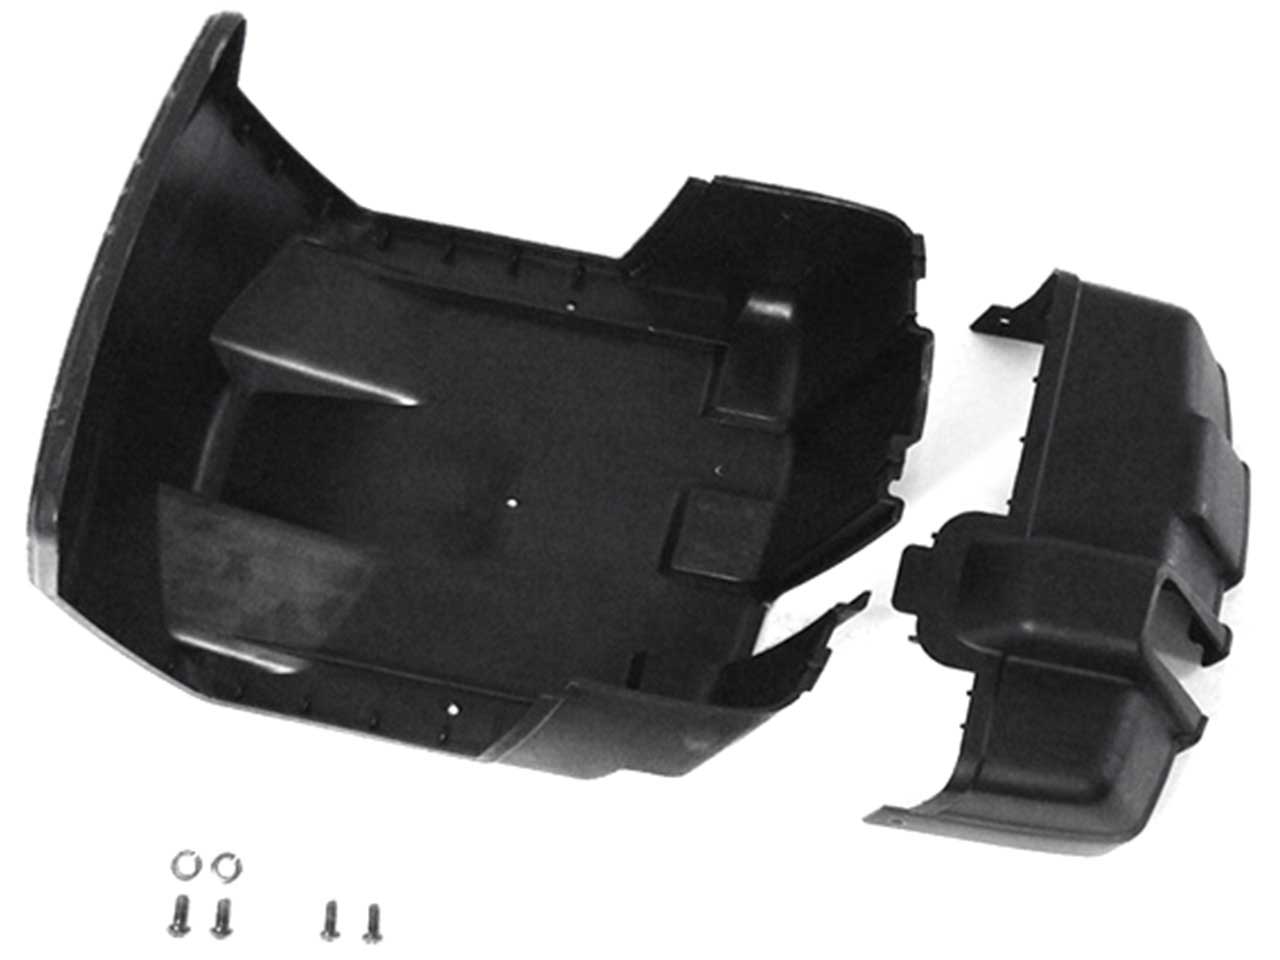 BERG Kettenkastenteile für Pedal-Gokarts mit XL/XXL-Rahmen, hinten